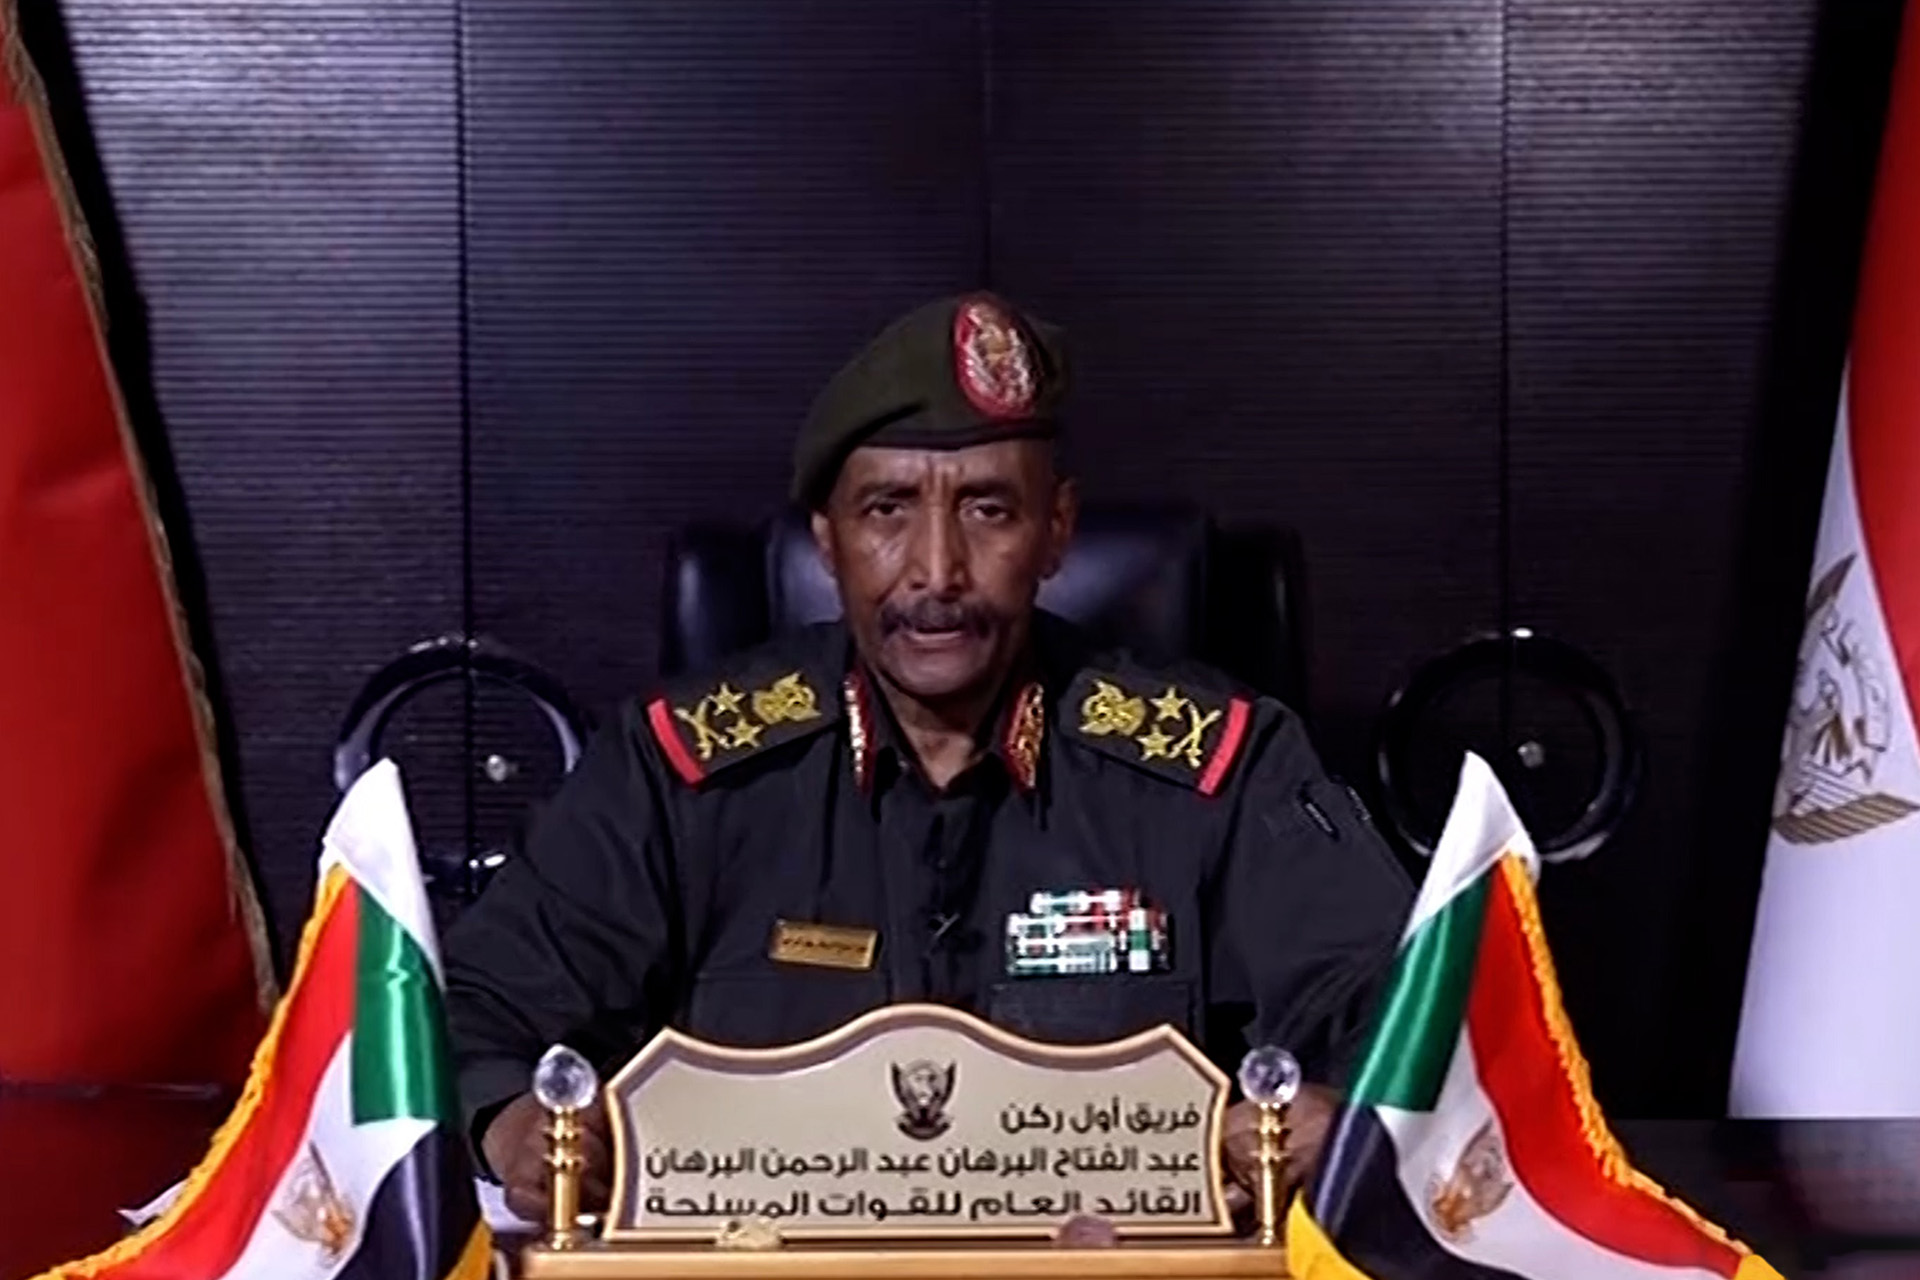 البرهان يحذر من مؤامرة وجودية تهدد السودان ويعلن وقف إطلاق النار يوم العيد وبيان غربي يدين الانتهاكات بدارفور